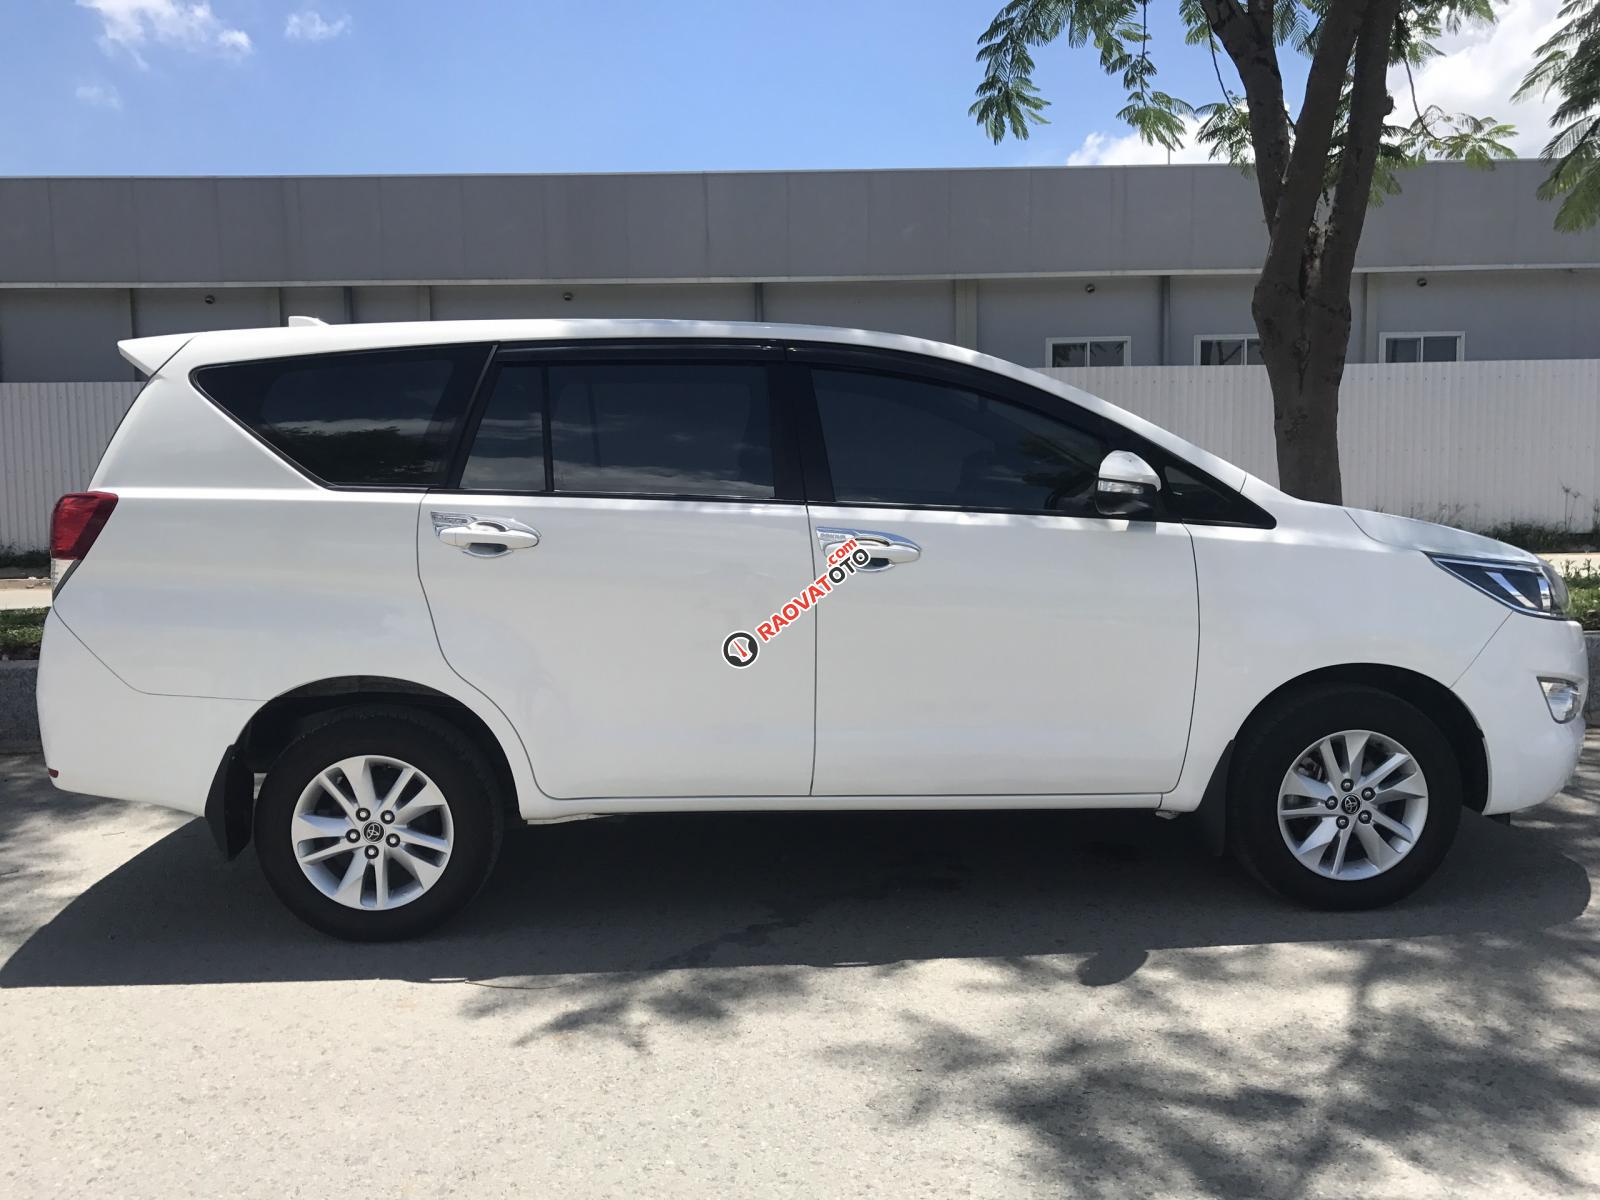 Bán xe Toyota Innova 2.0E năm 2017, màu trắng, BS TpHCM, trả góp 200tr-2